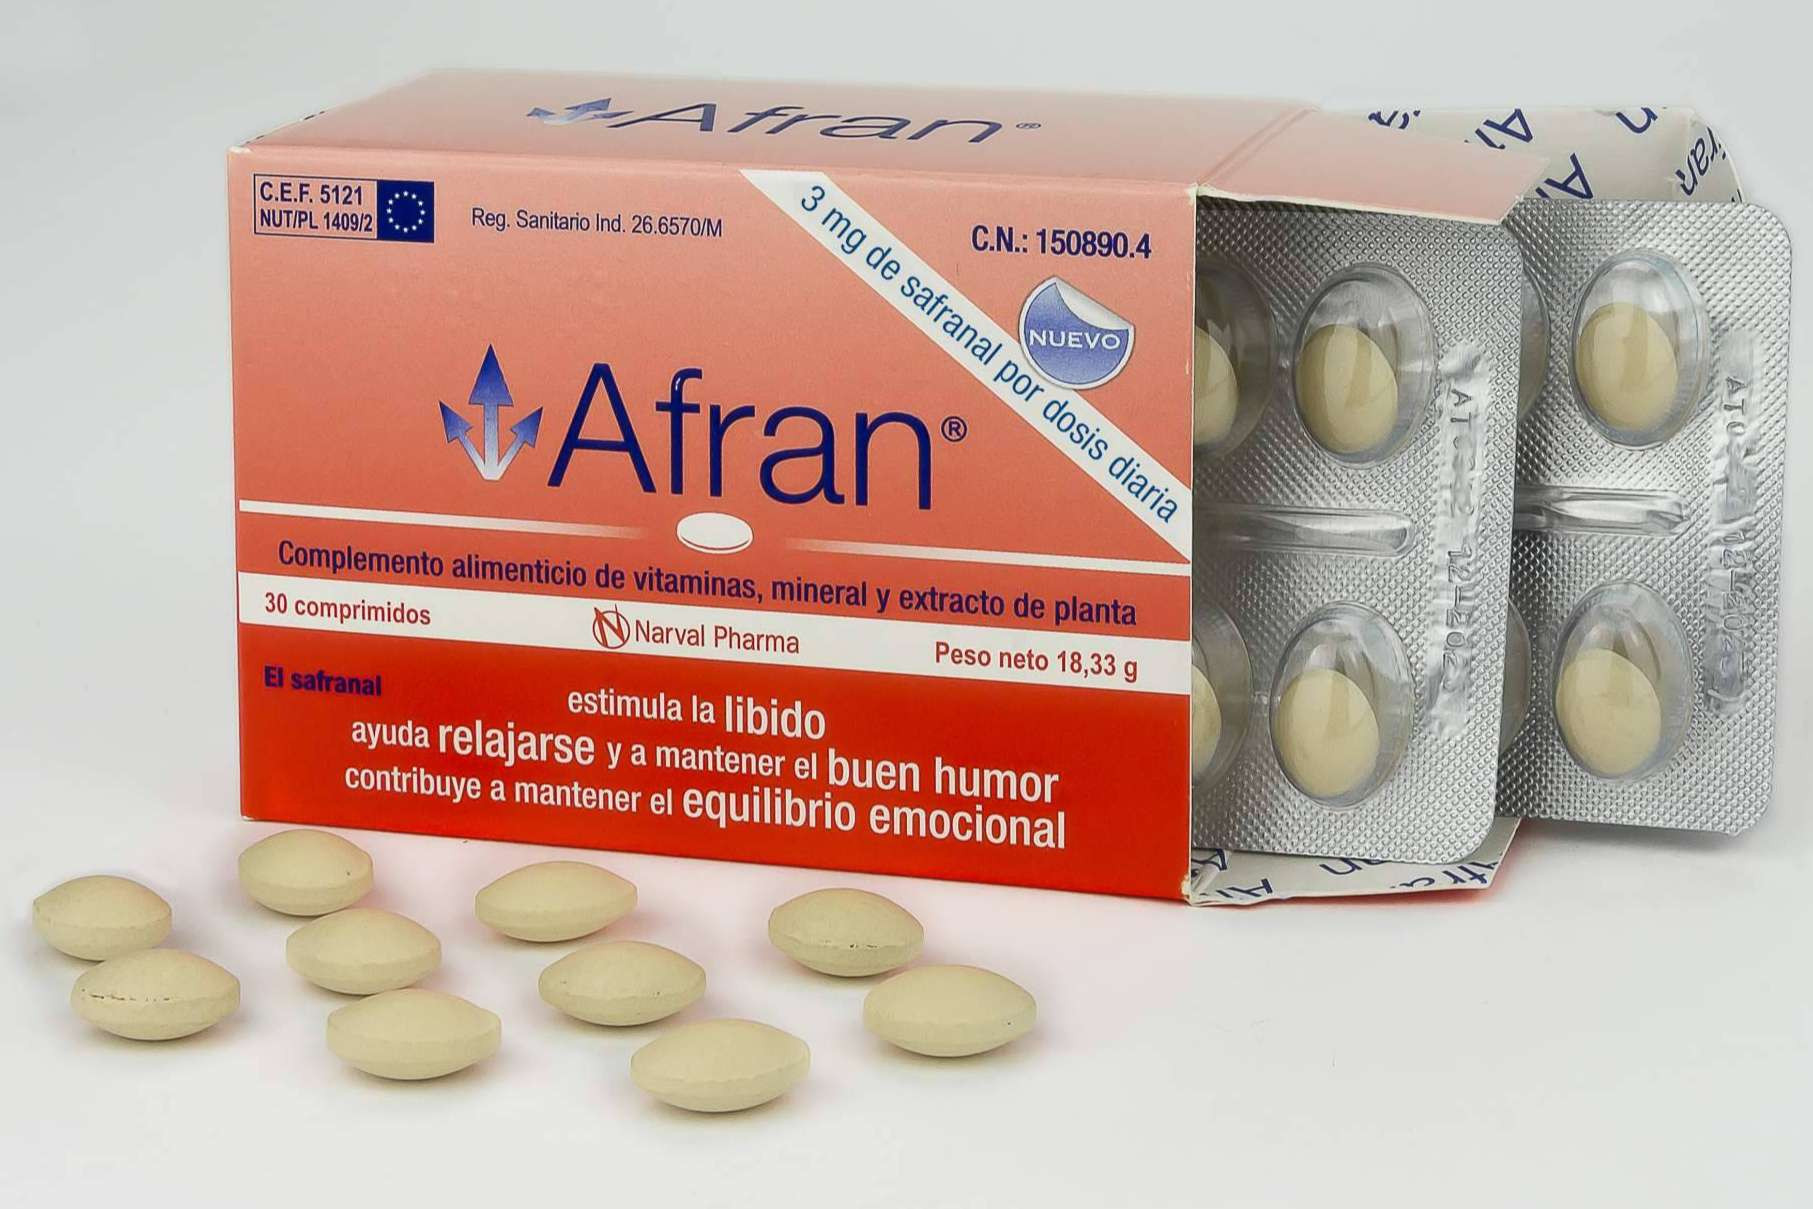  Afran de Naraval Pharma ayuda a la estabilidad emocional y al buen humor, gracias al azafrán 